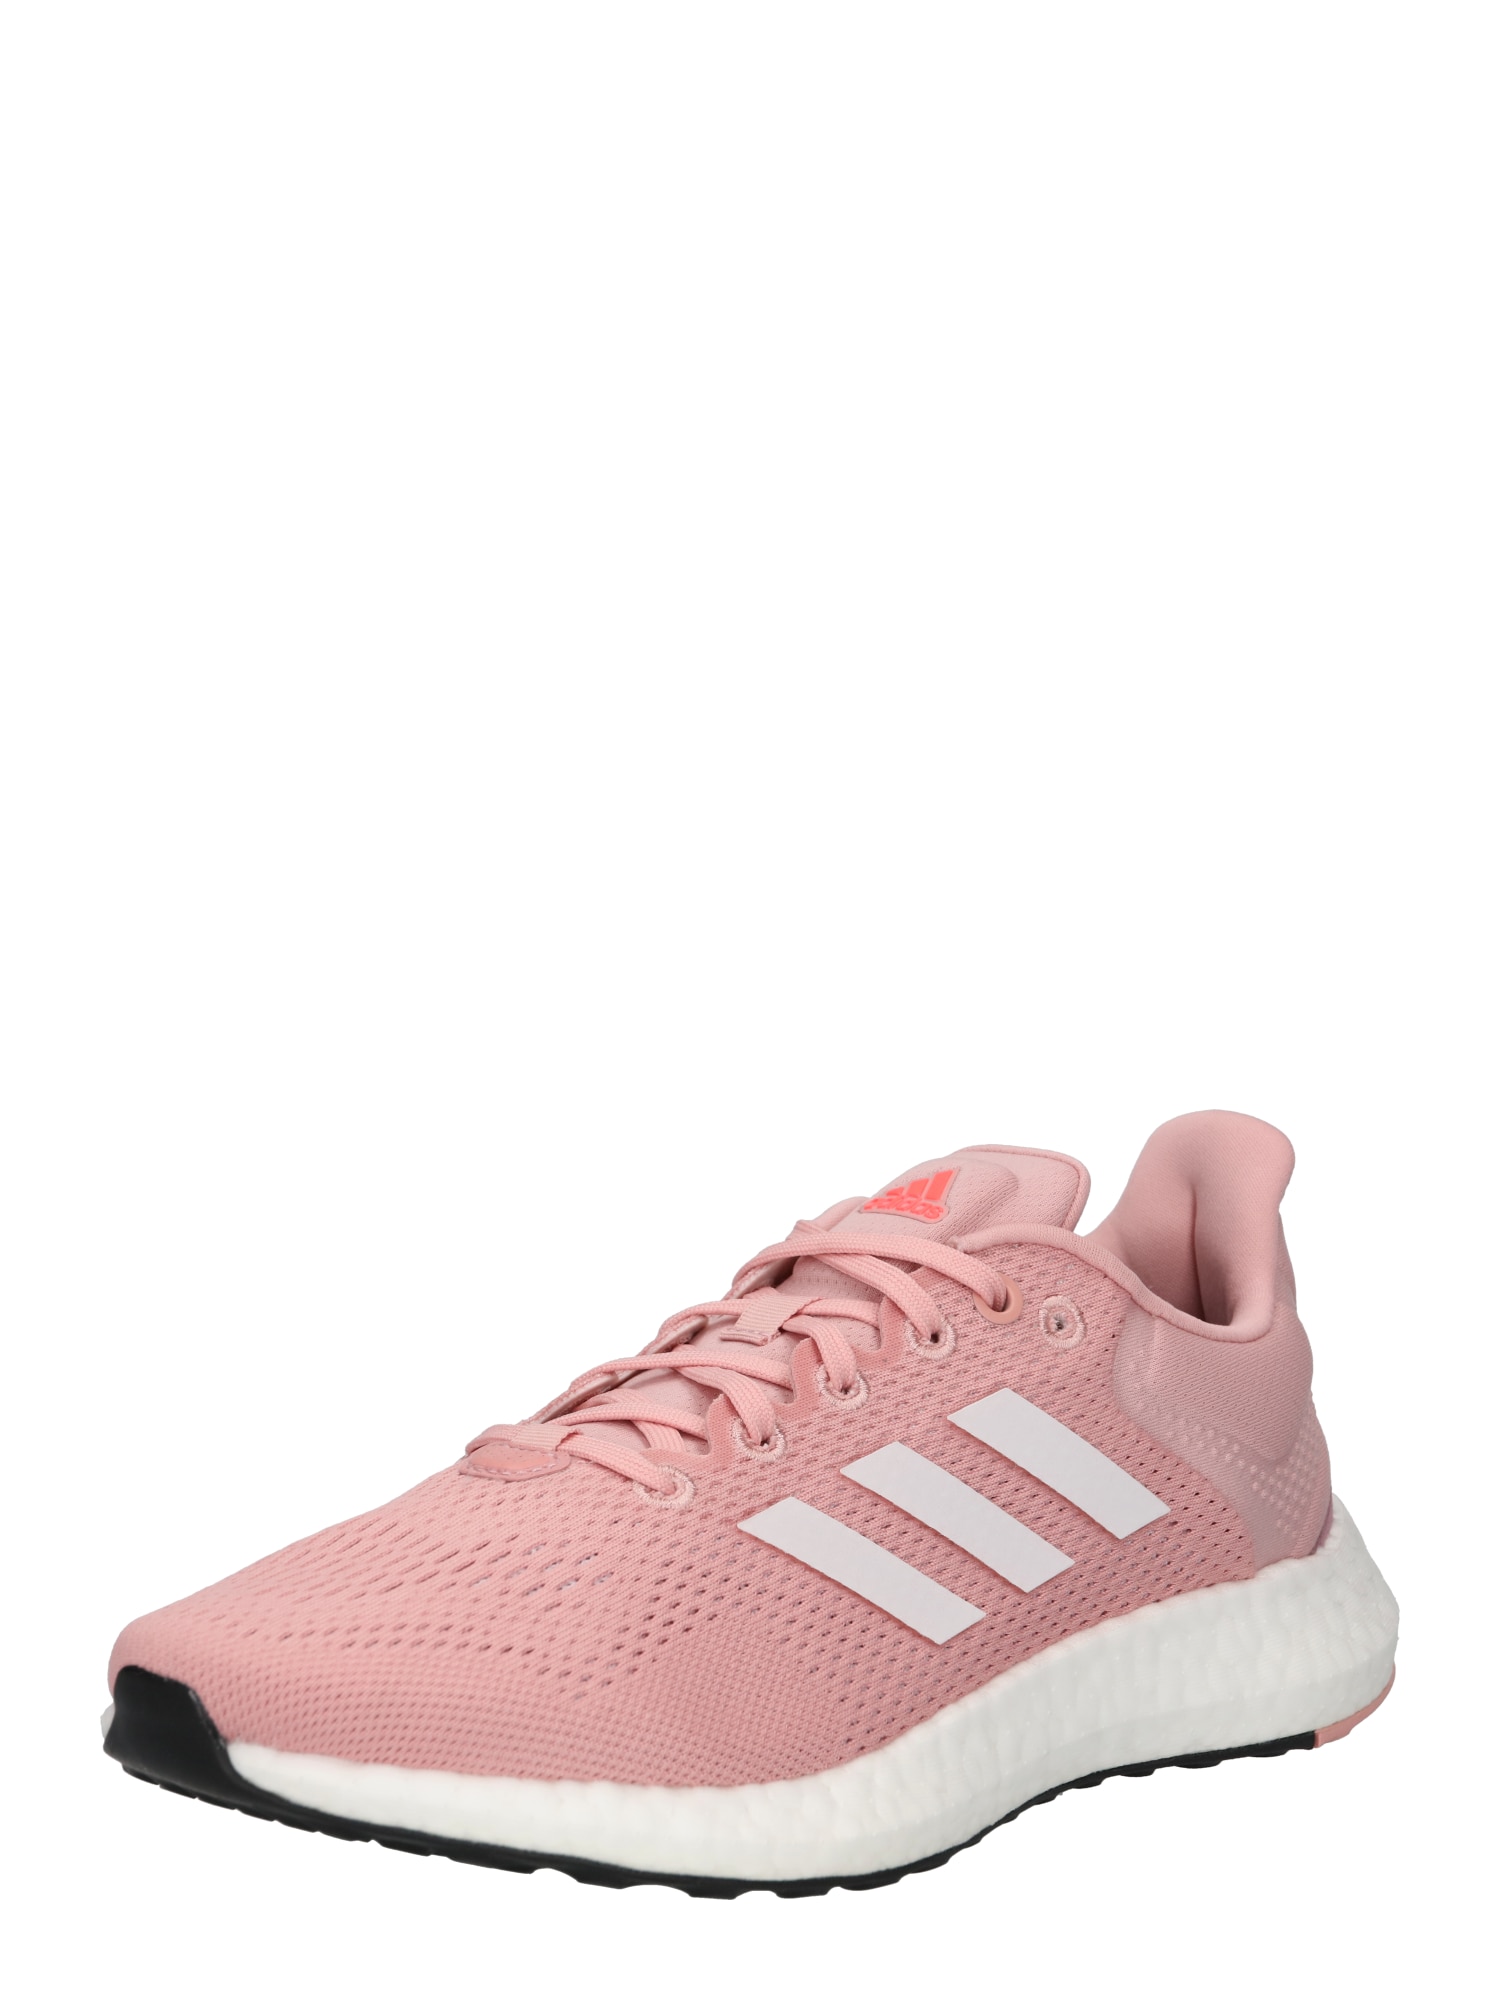 ADIDAS PERFORMANCE Bėgimo batai balta / šviesiai rožinė